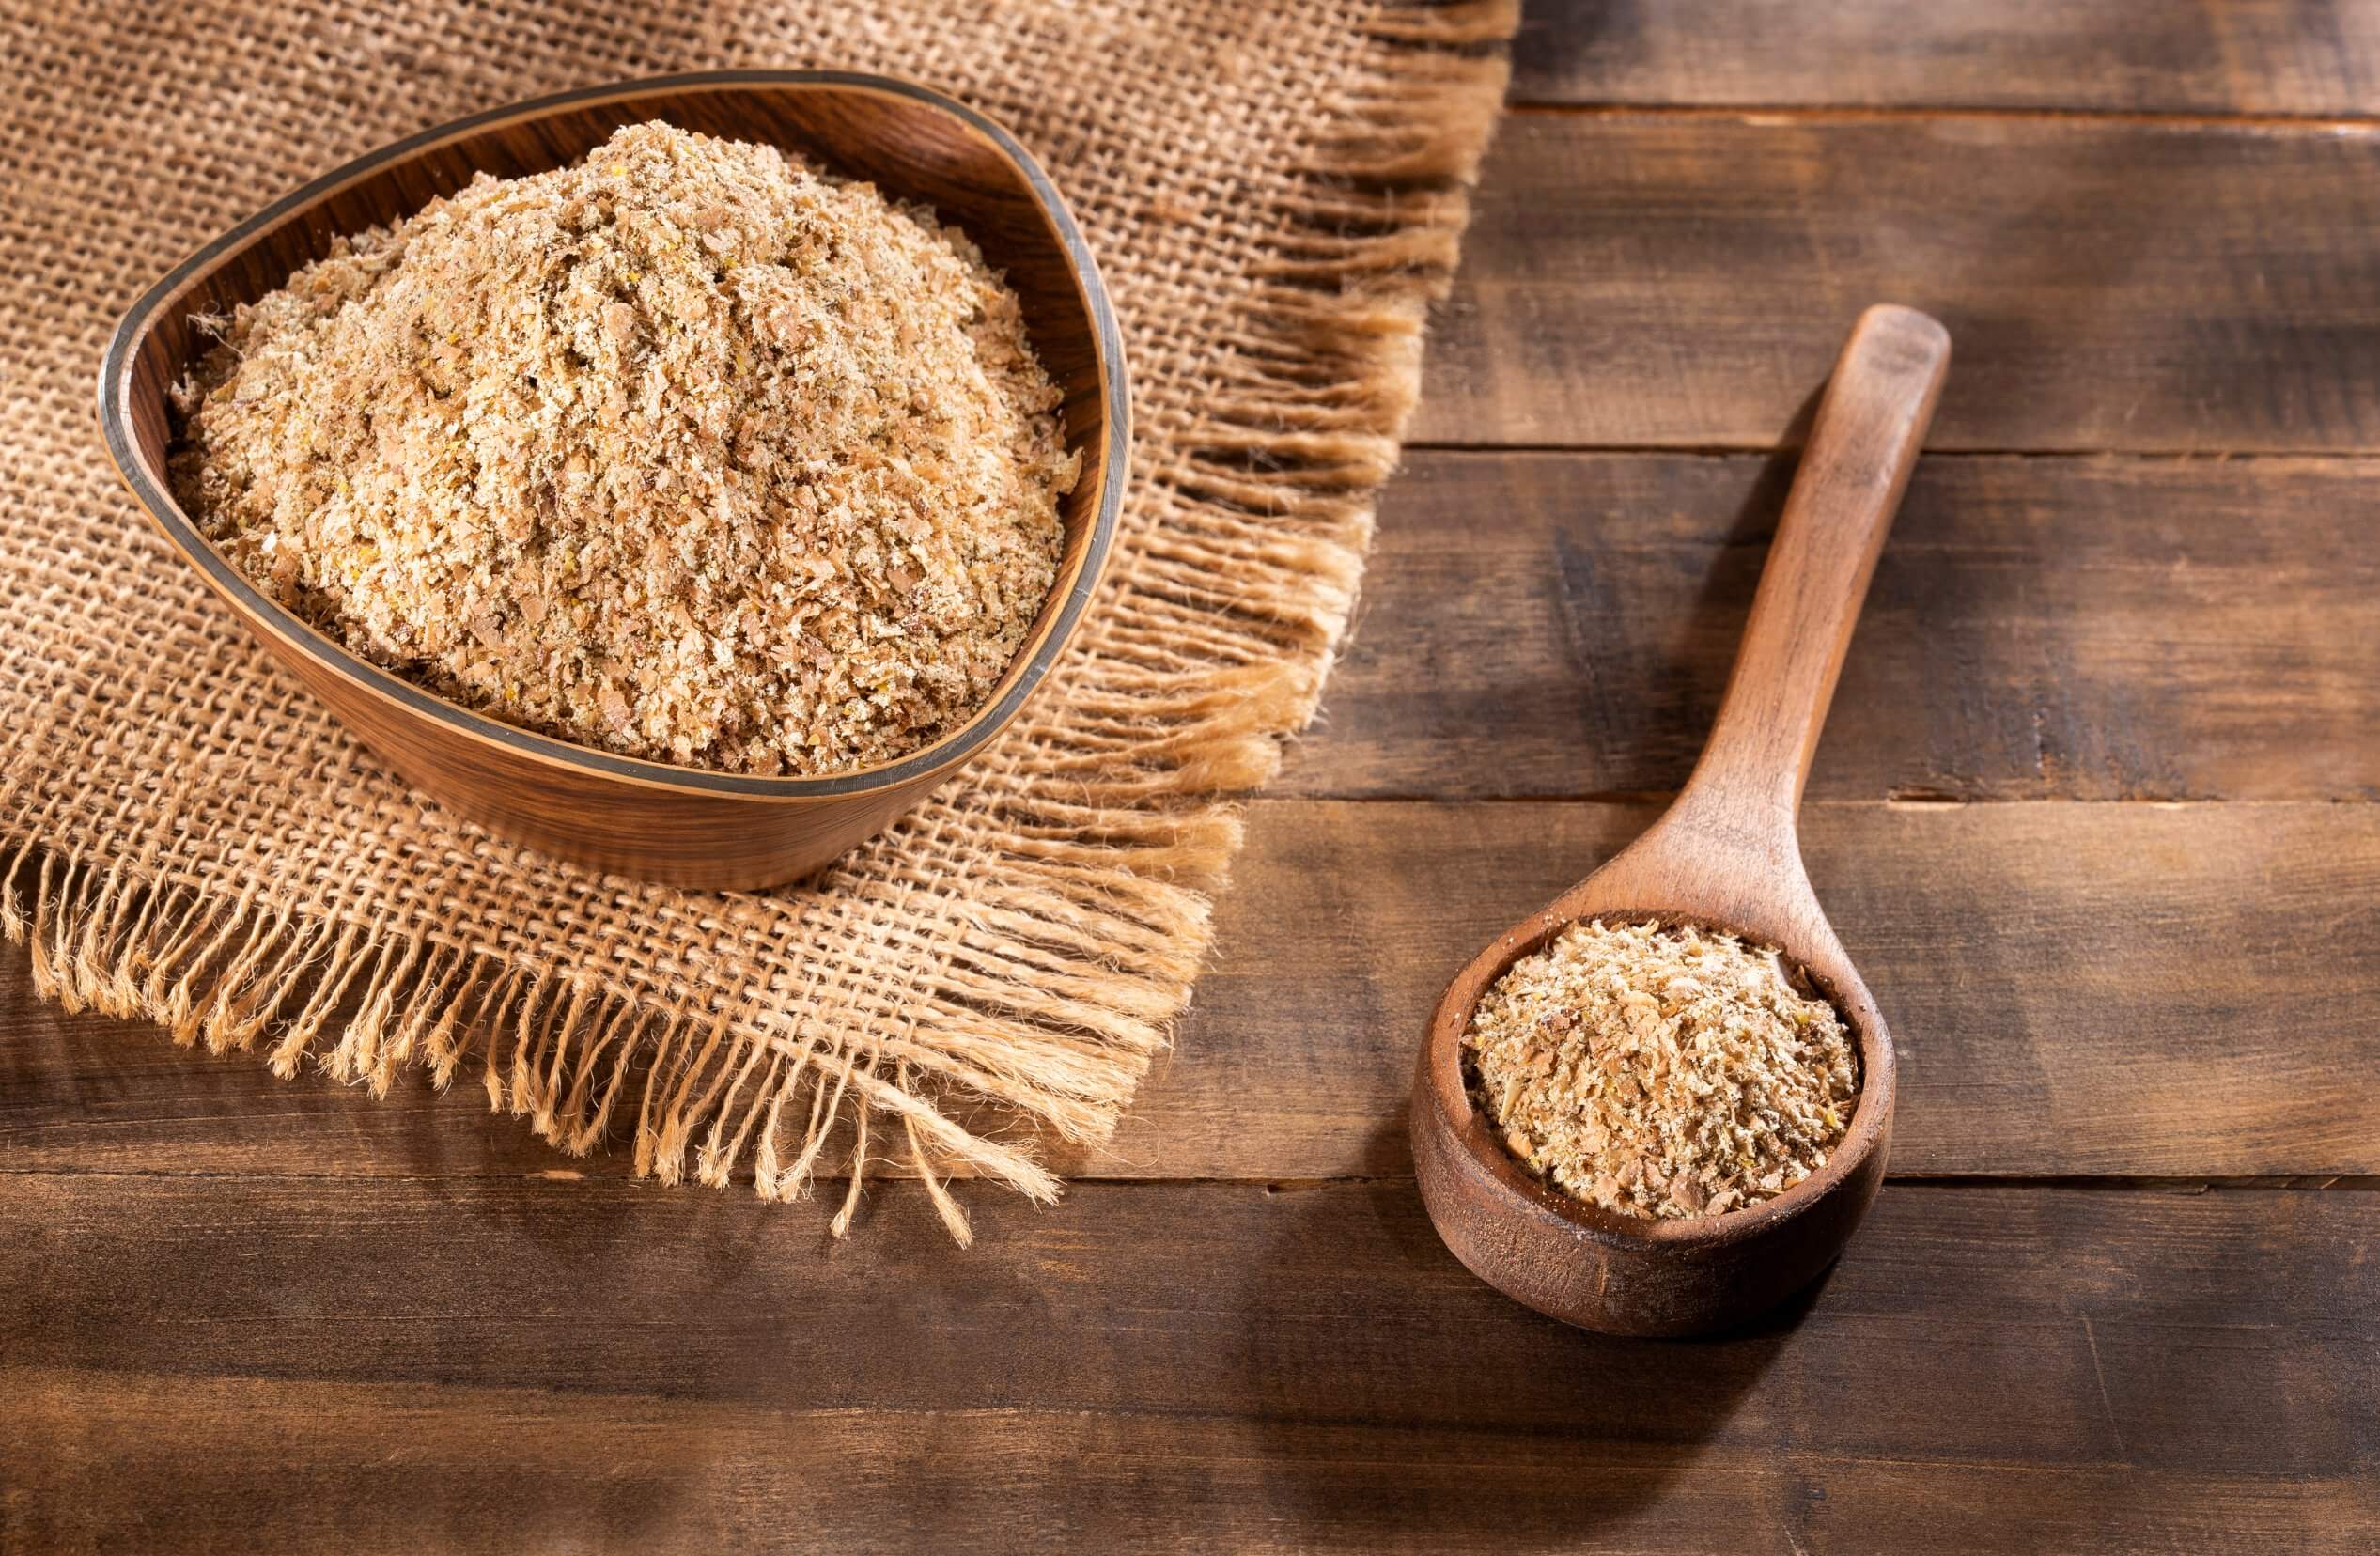 Cómo consumir salvado de trigo: consejos y beneficios - Mejor con Salud